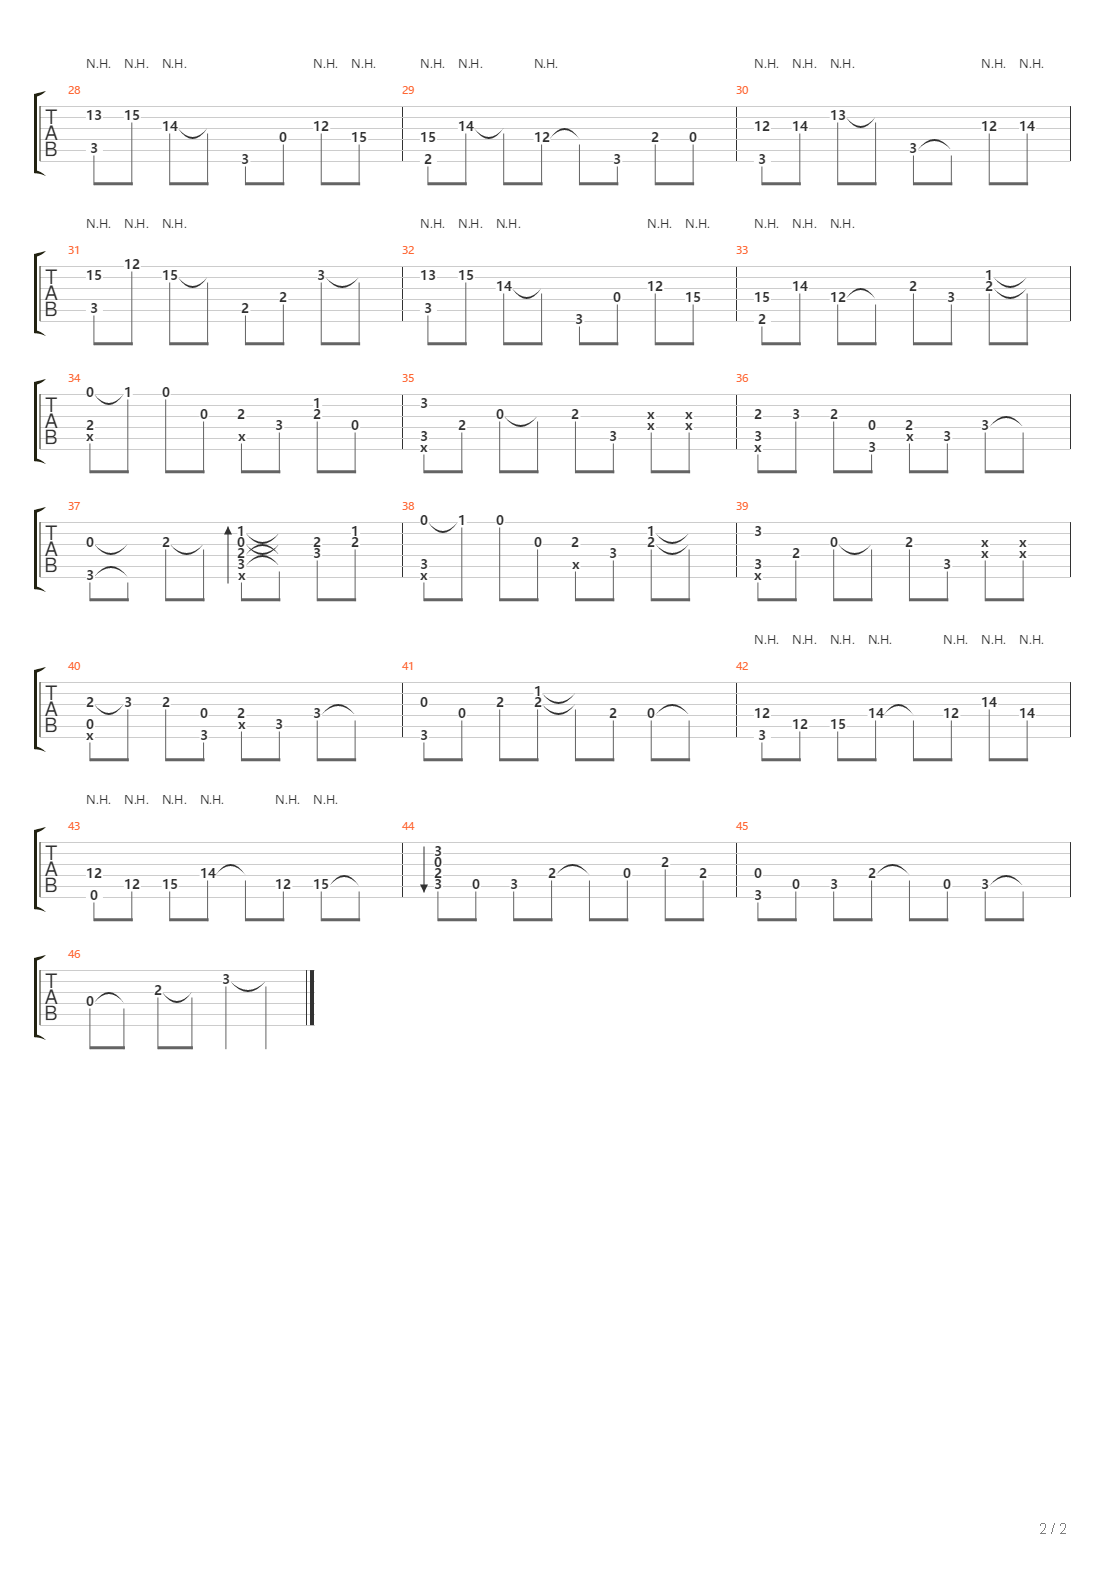 五月雨-火影忍者疾风传OST双手简谱预览1-钢琴谱文件（五线谱、双手简谱、数字谱、Midi、PDF）免费下载